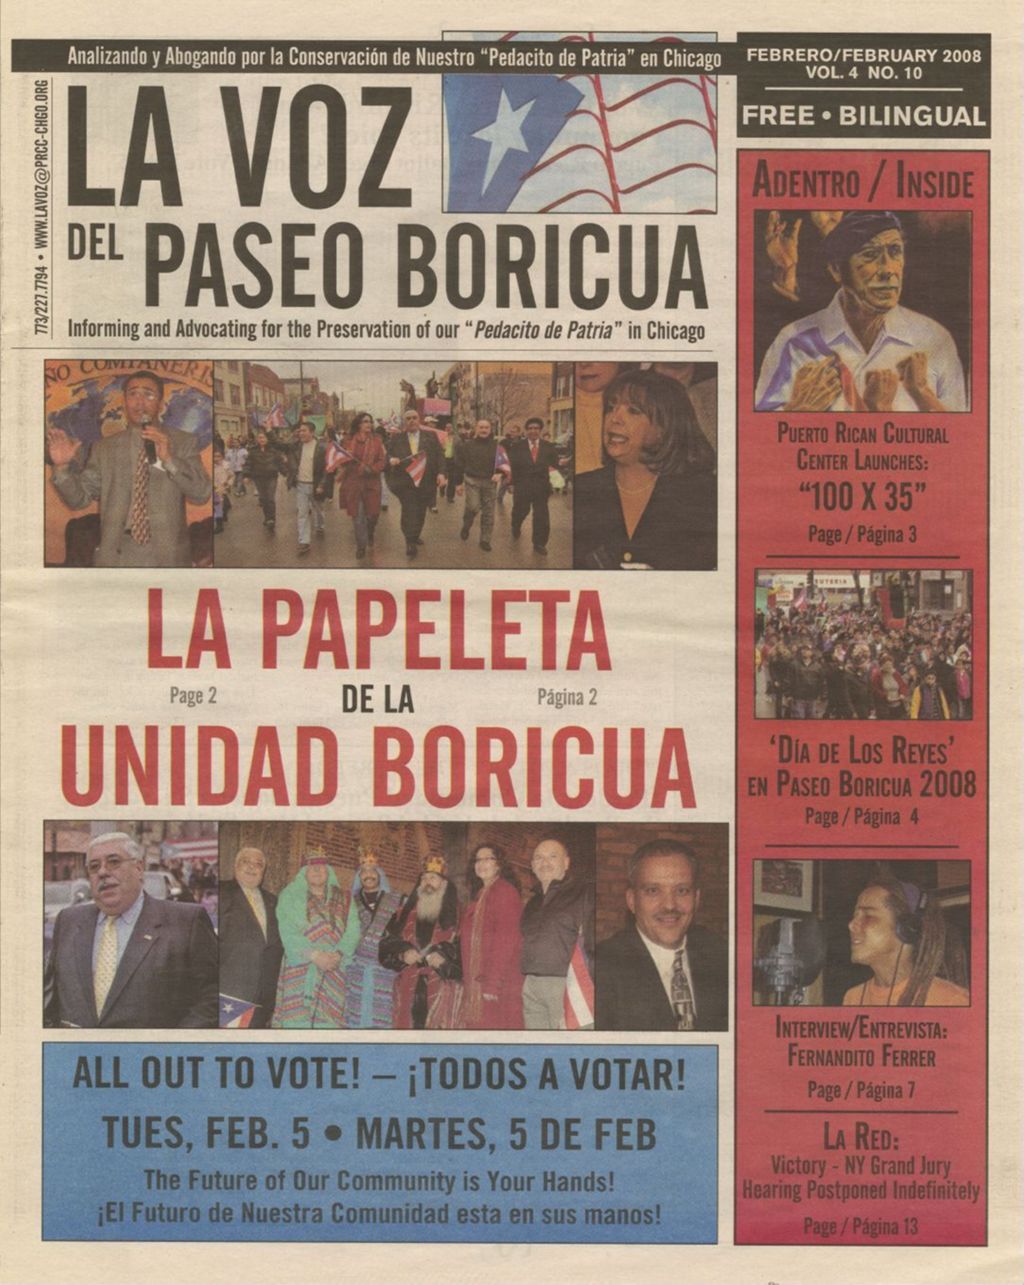 La Voz del Paseo Boricua; February 2008; vol. 4, no. 10 (cover only)